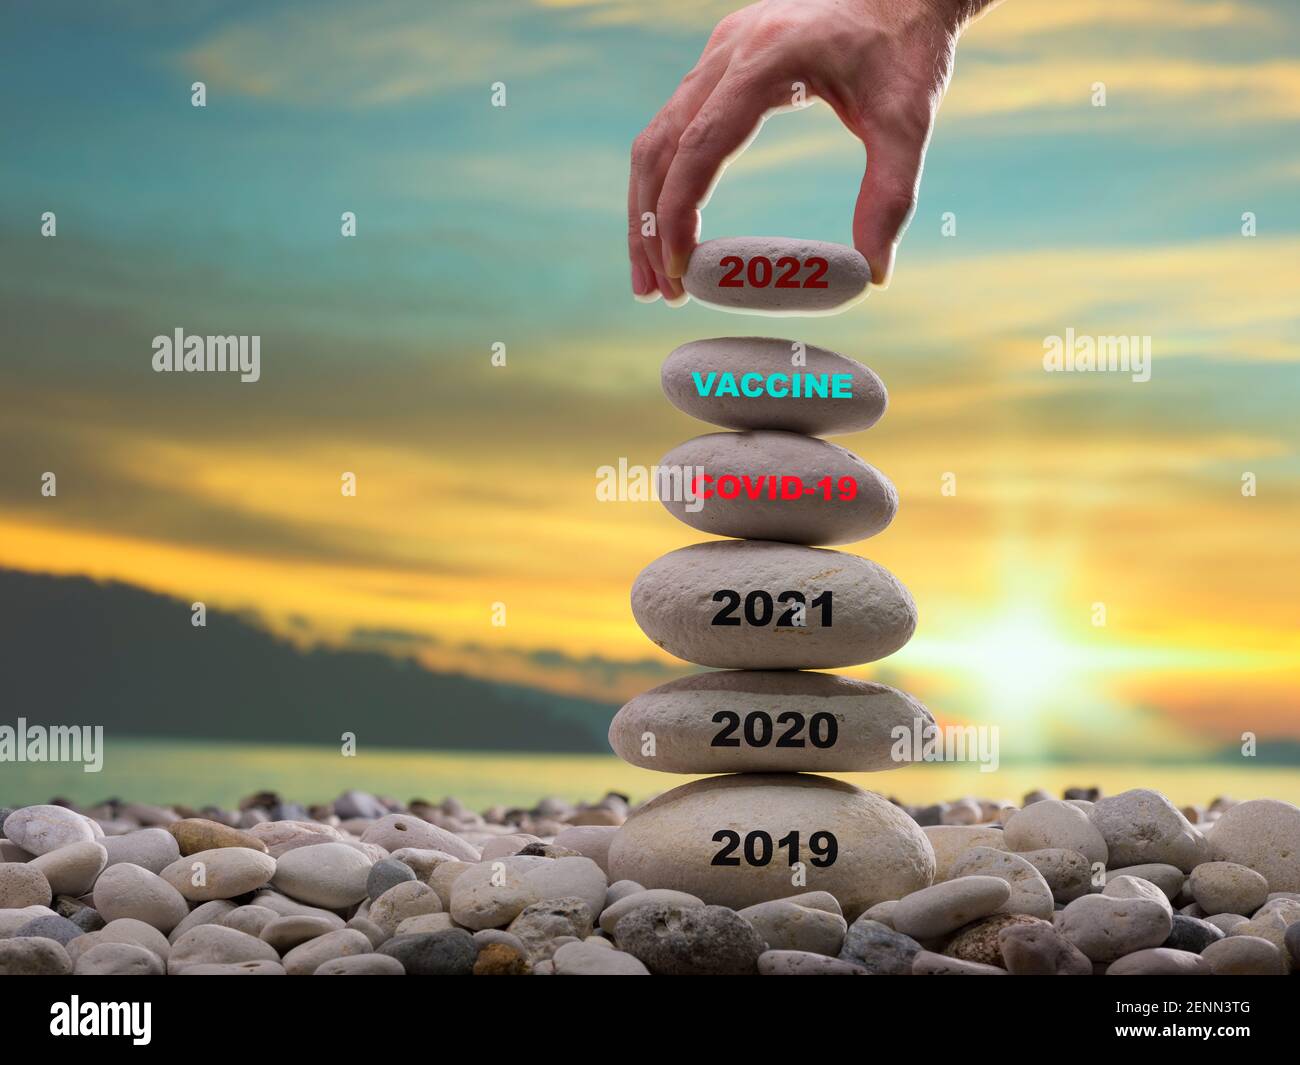 Konzept für das neue Jahr. 2021 Covid-19-Impfstoff und Beginn des normalen Lebens im Jahr 2022. Positives Denken und Rückkehr in ein gesundes Jahr Stockfoto